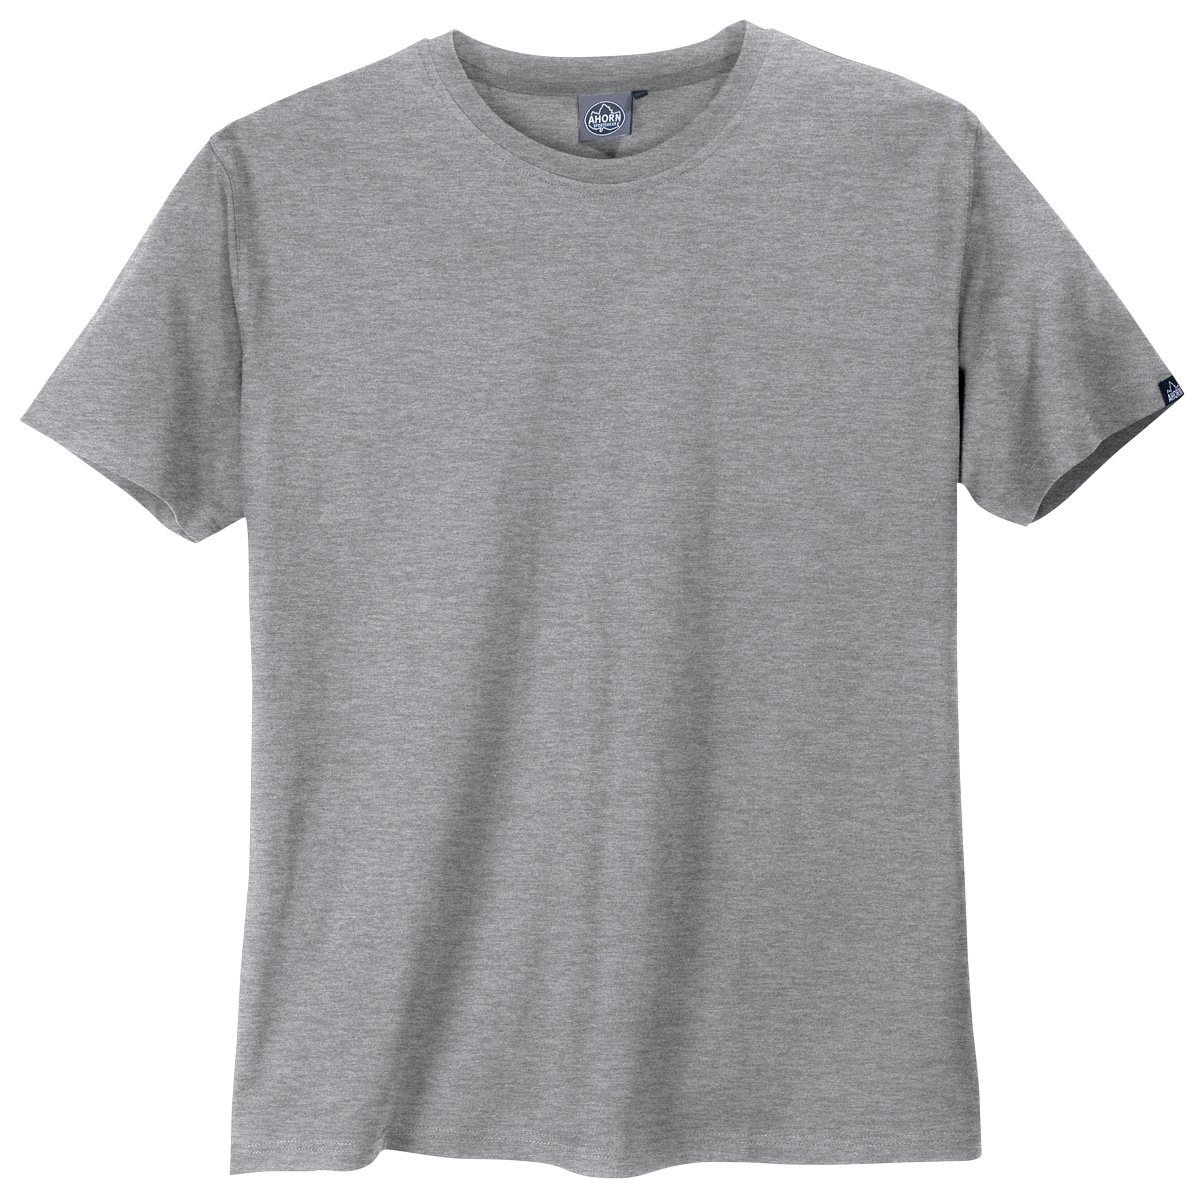 [Wir haben eine große Menge] AHORN SPORTSWEAR Rundhalsshirt Rundhals grau Sportswear Große Ahorn Basic Größen T-Shirt melange